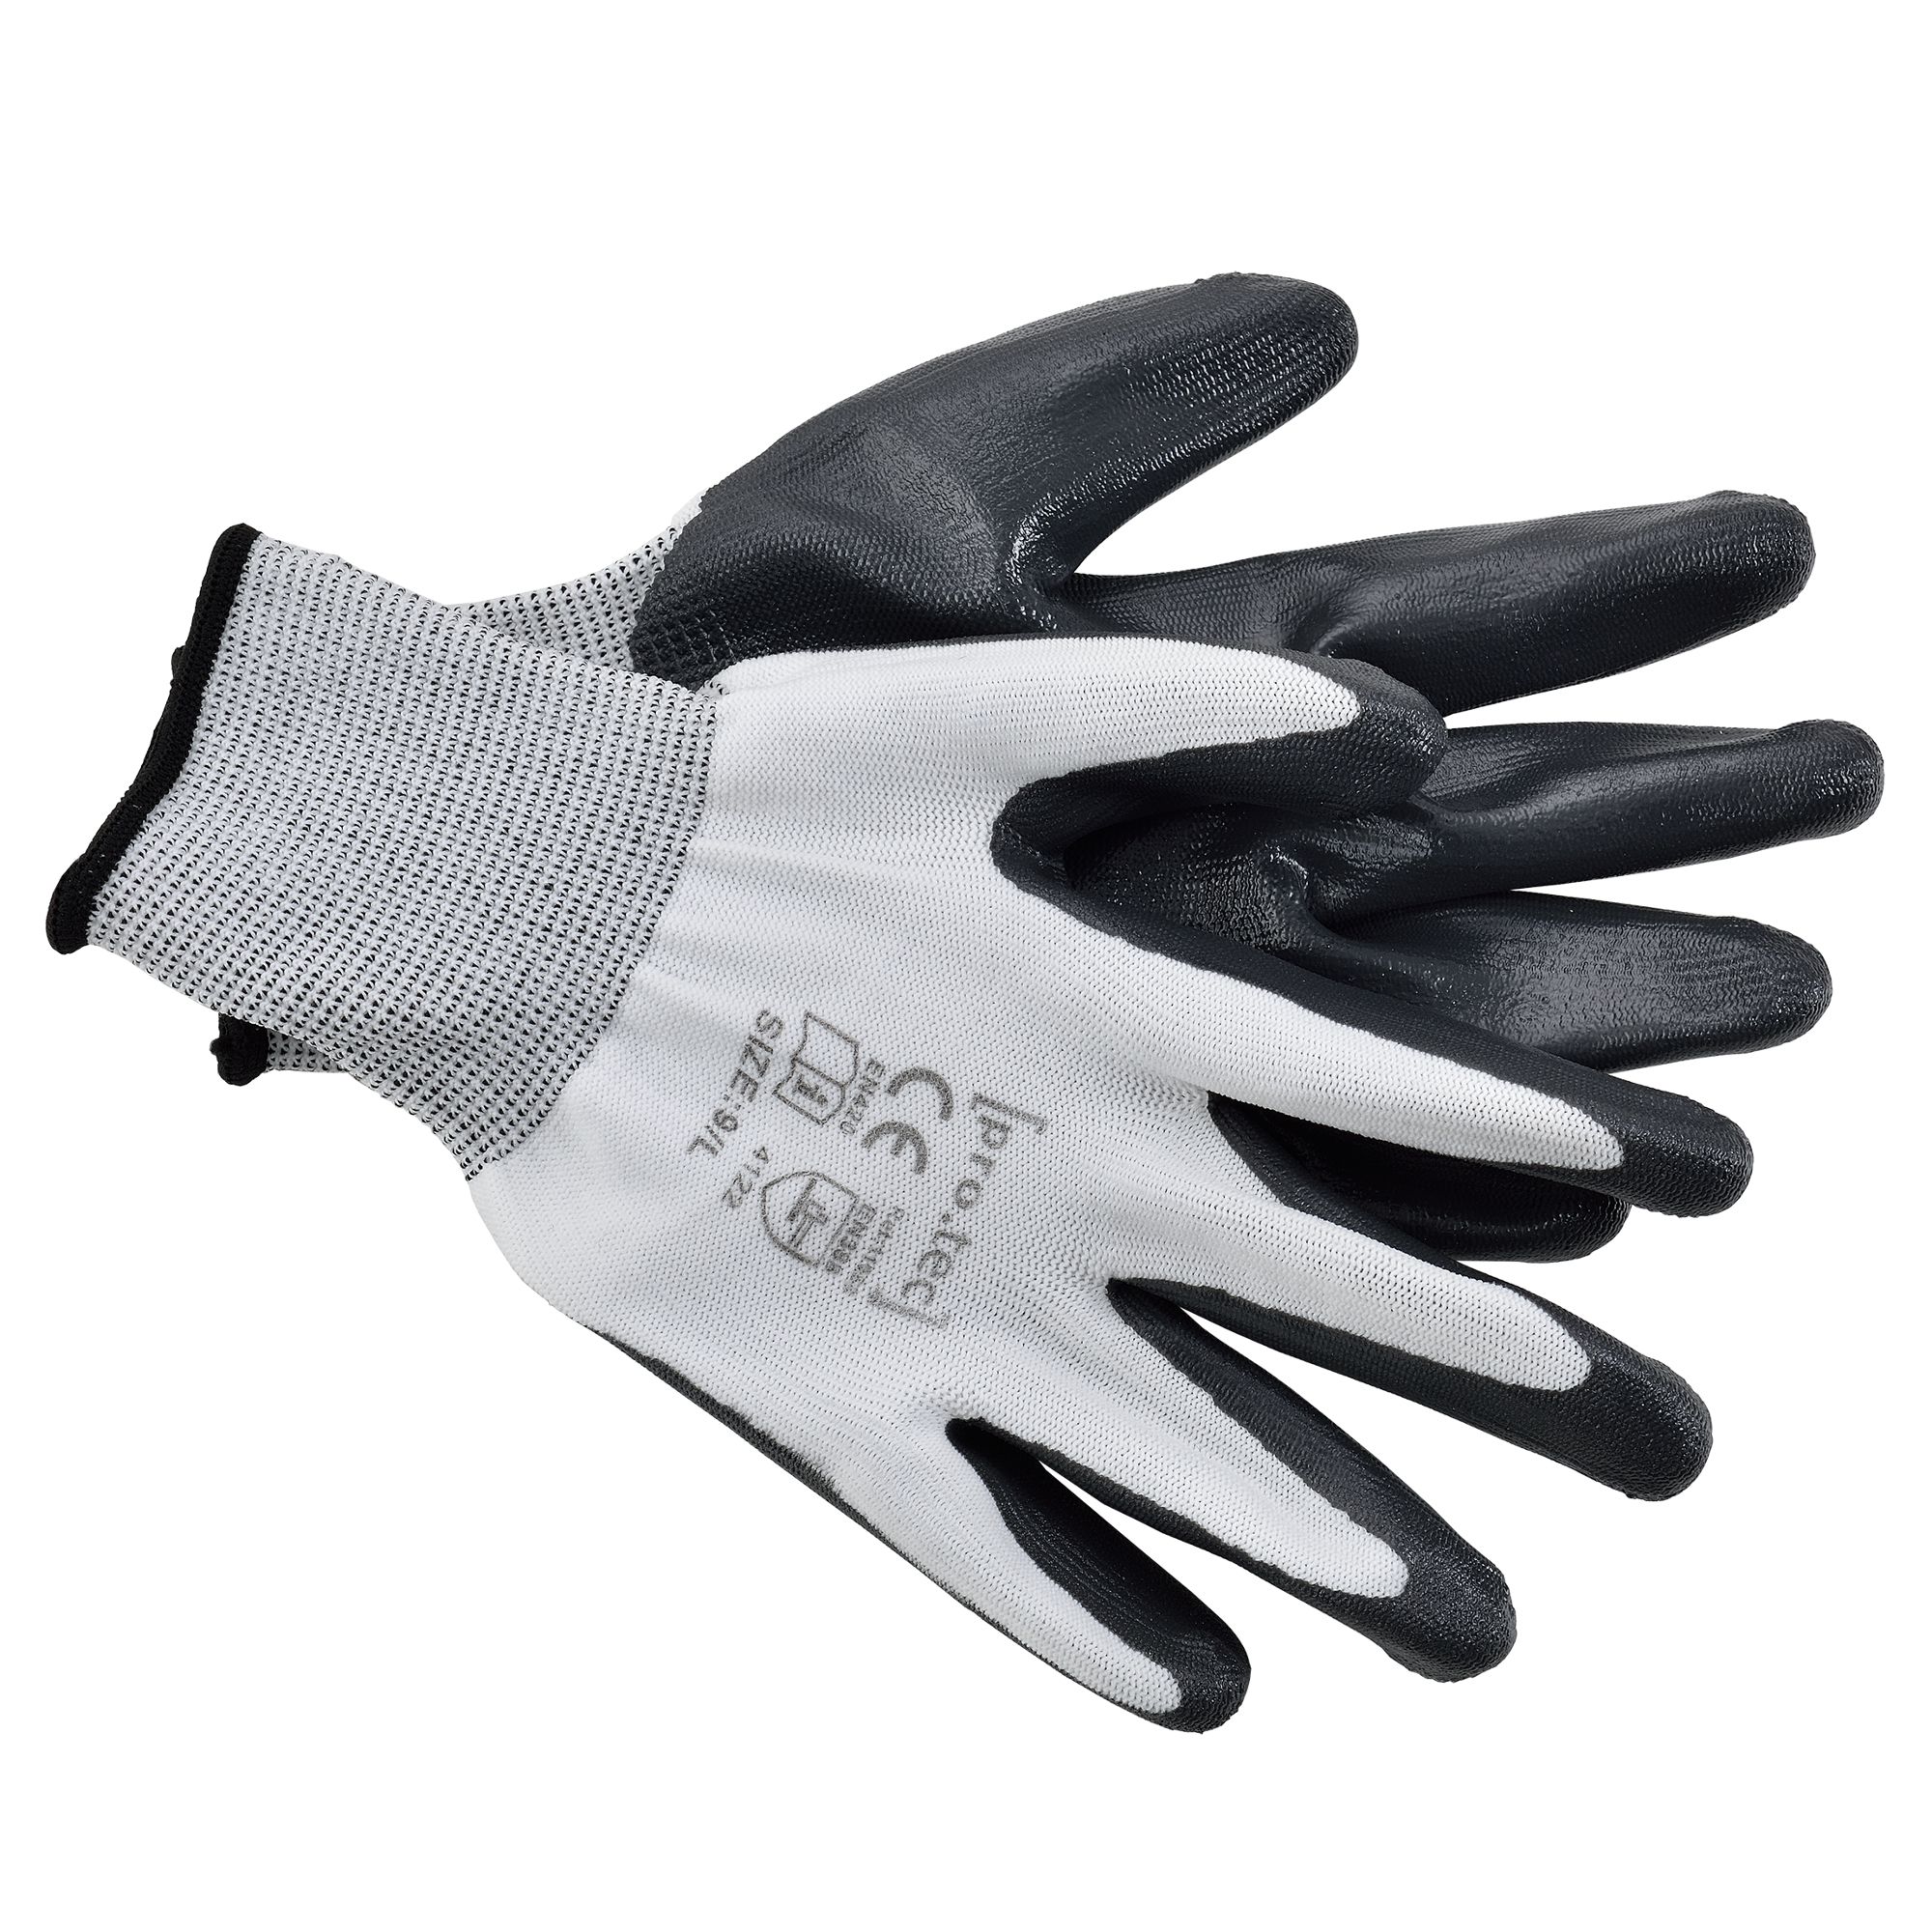 [pro.tec]® Ochranné rukavice AAGG-4302 - 24 párů - L - H.T. Trade Service GmbH & Co. KG